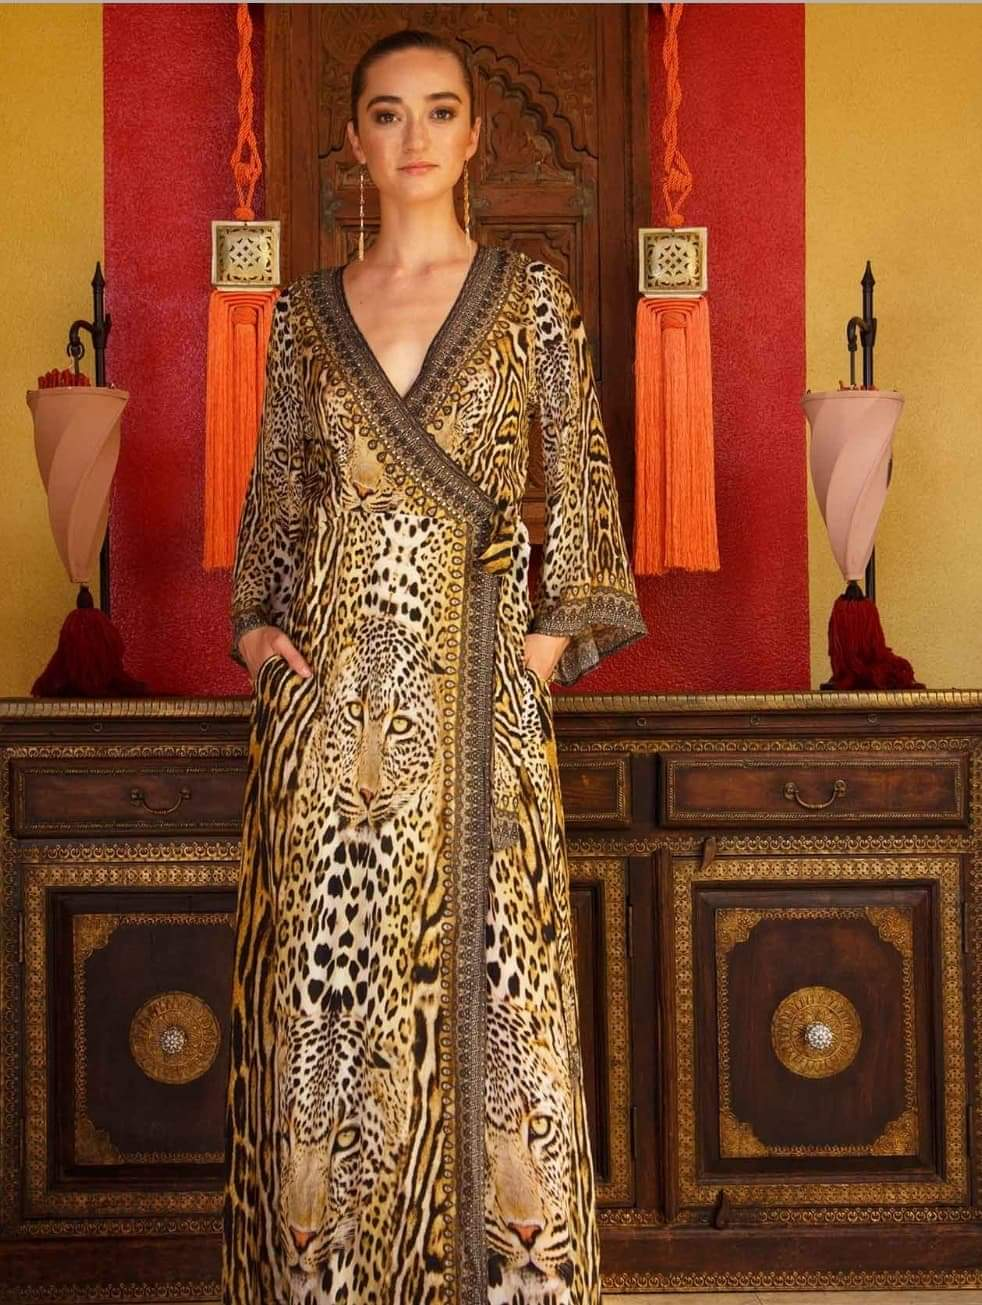 Cheetah Print Wrap Dress Outlet Shop ...